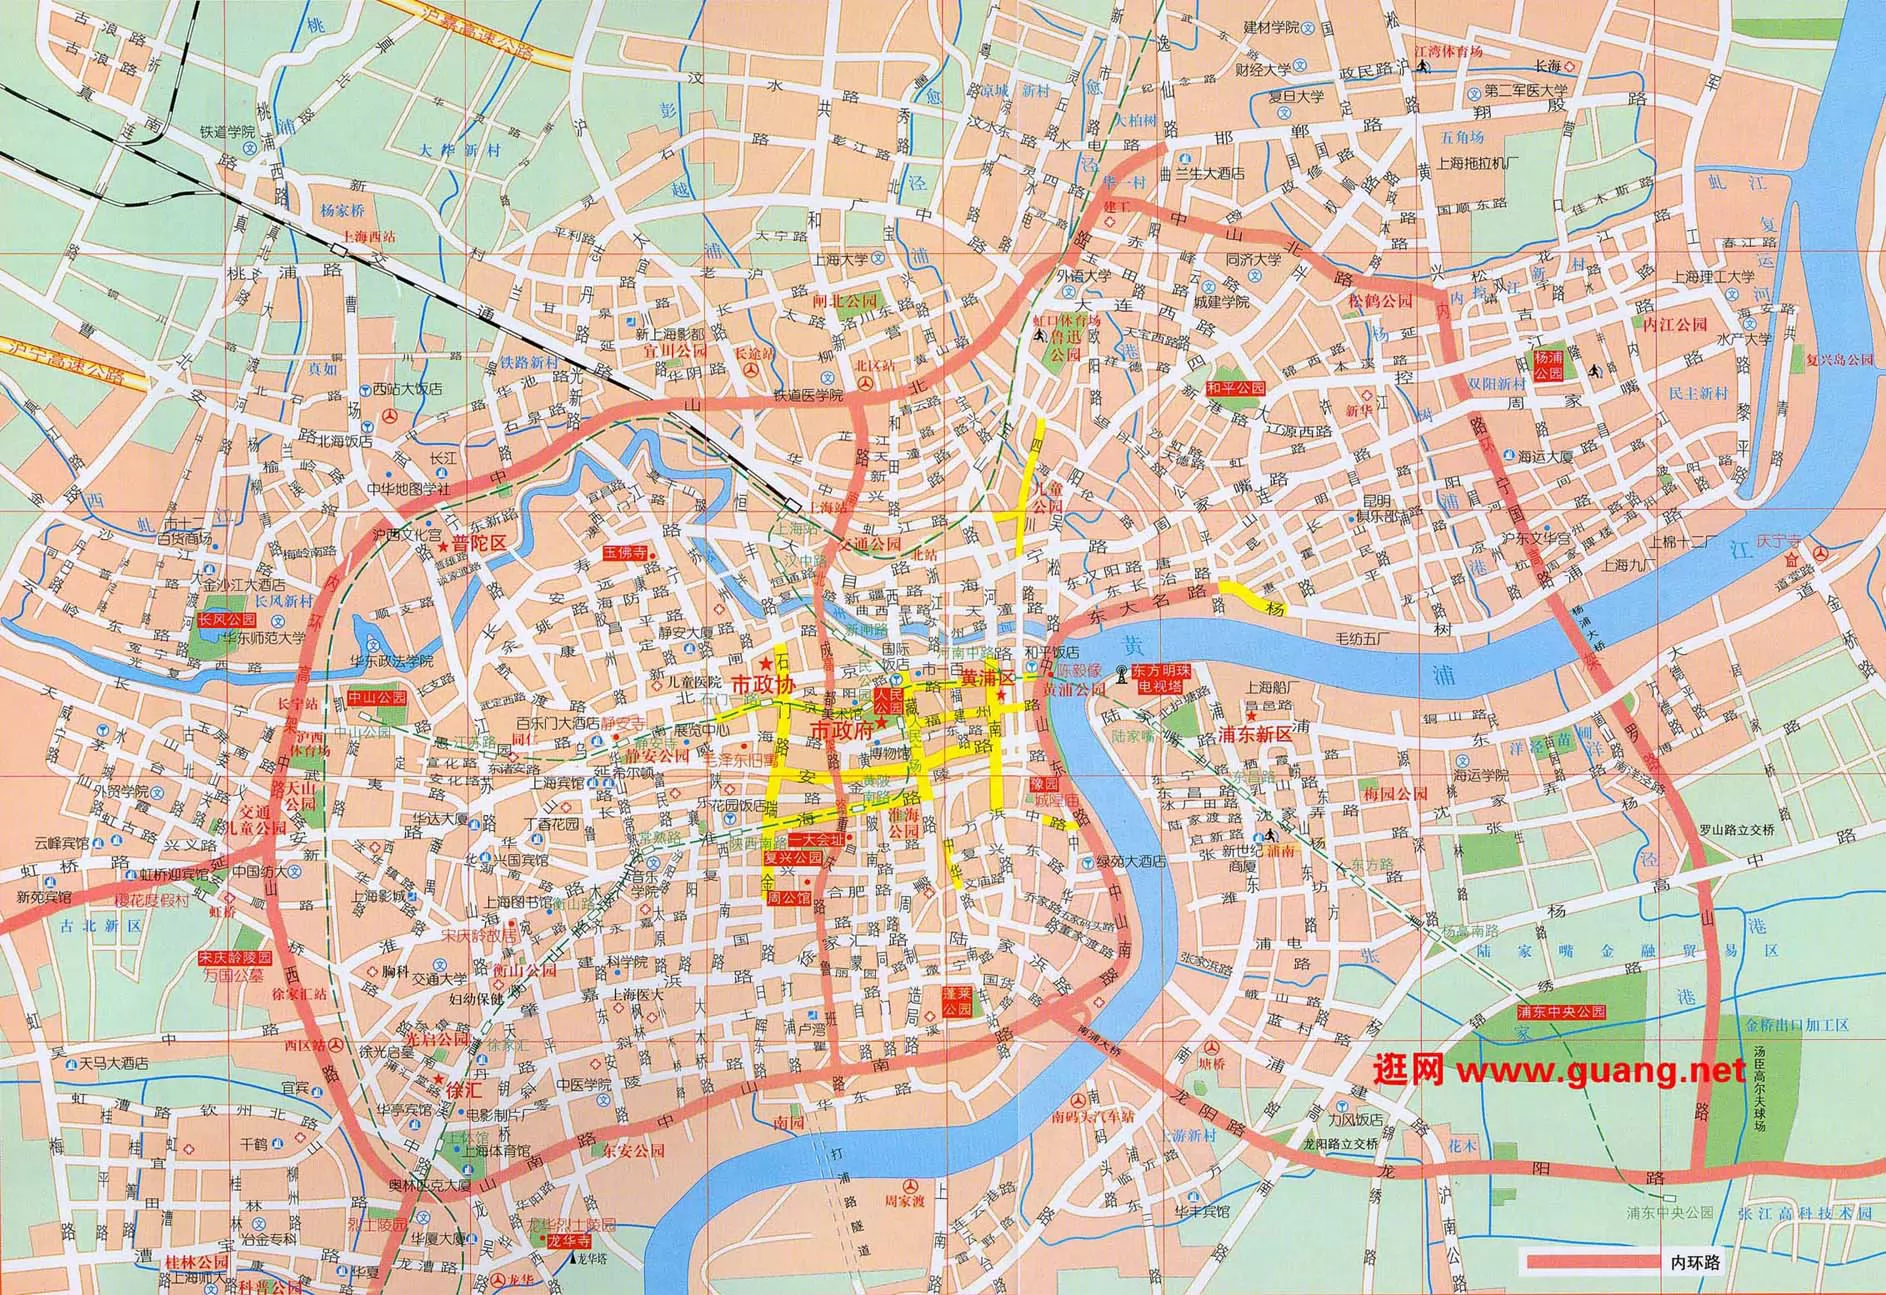 上海市区地图,上海市区地图查询,上海市区地图